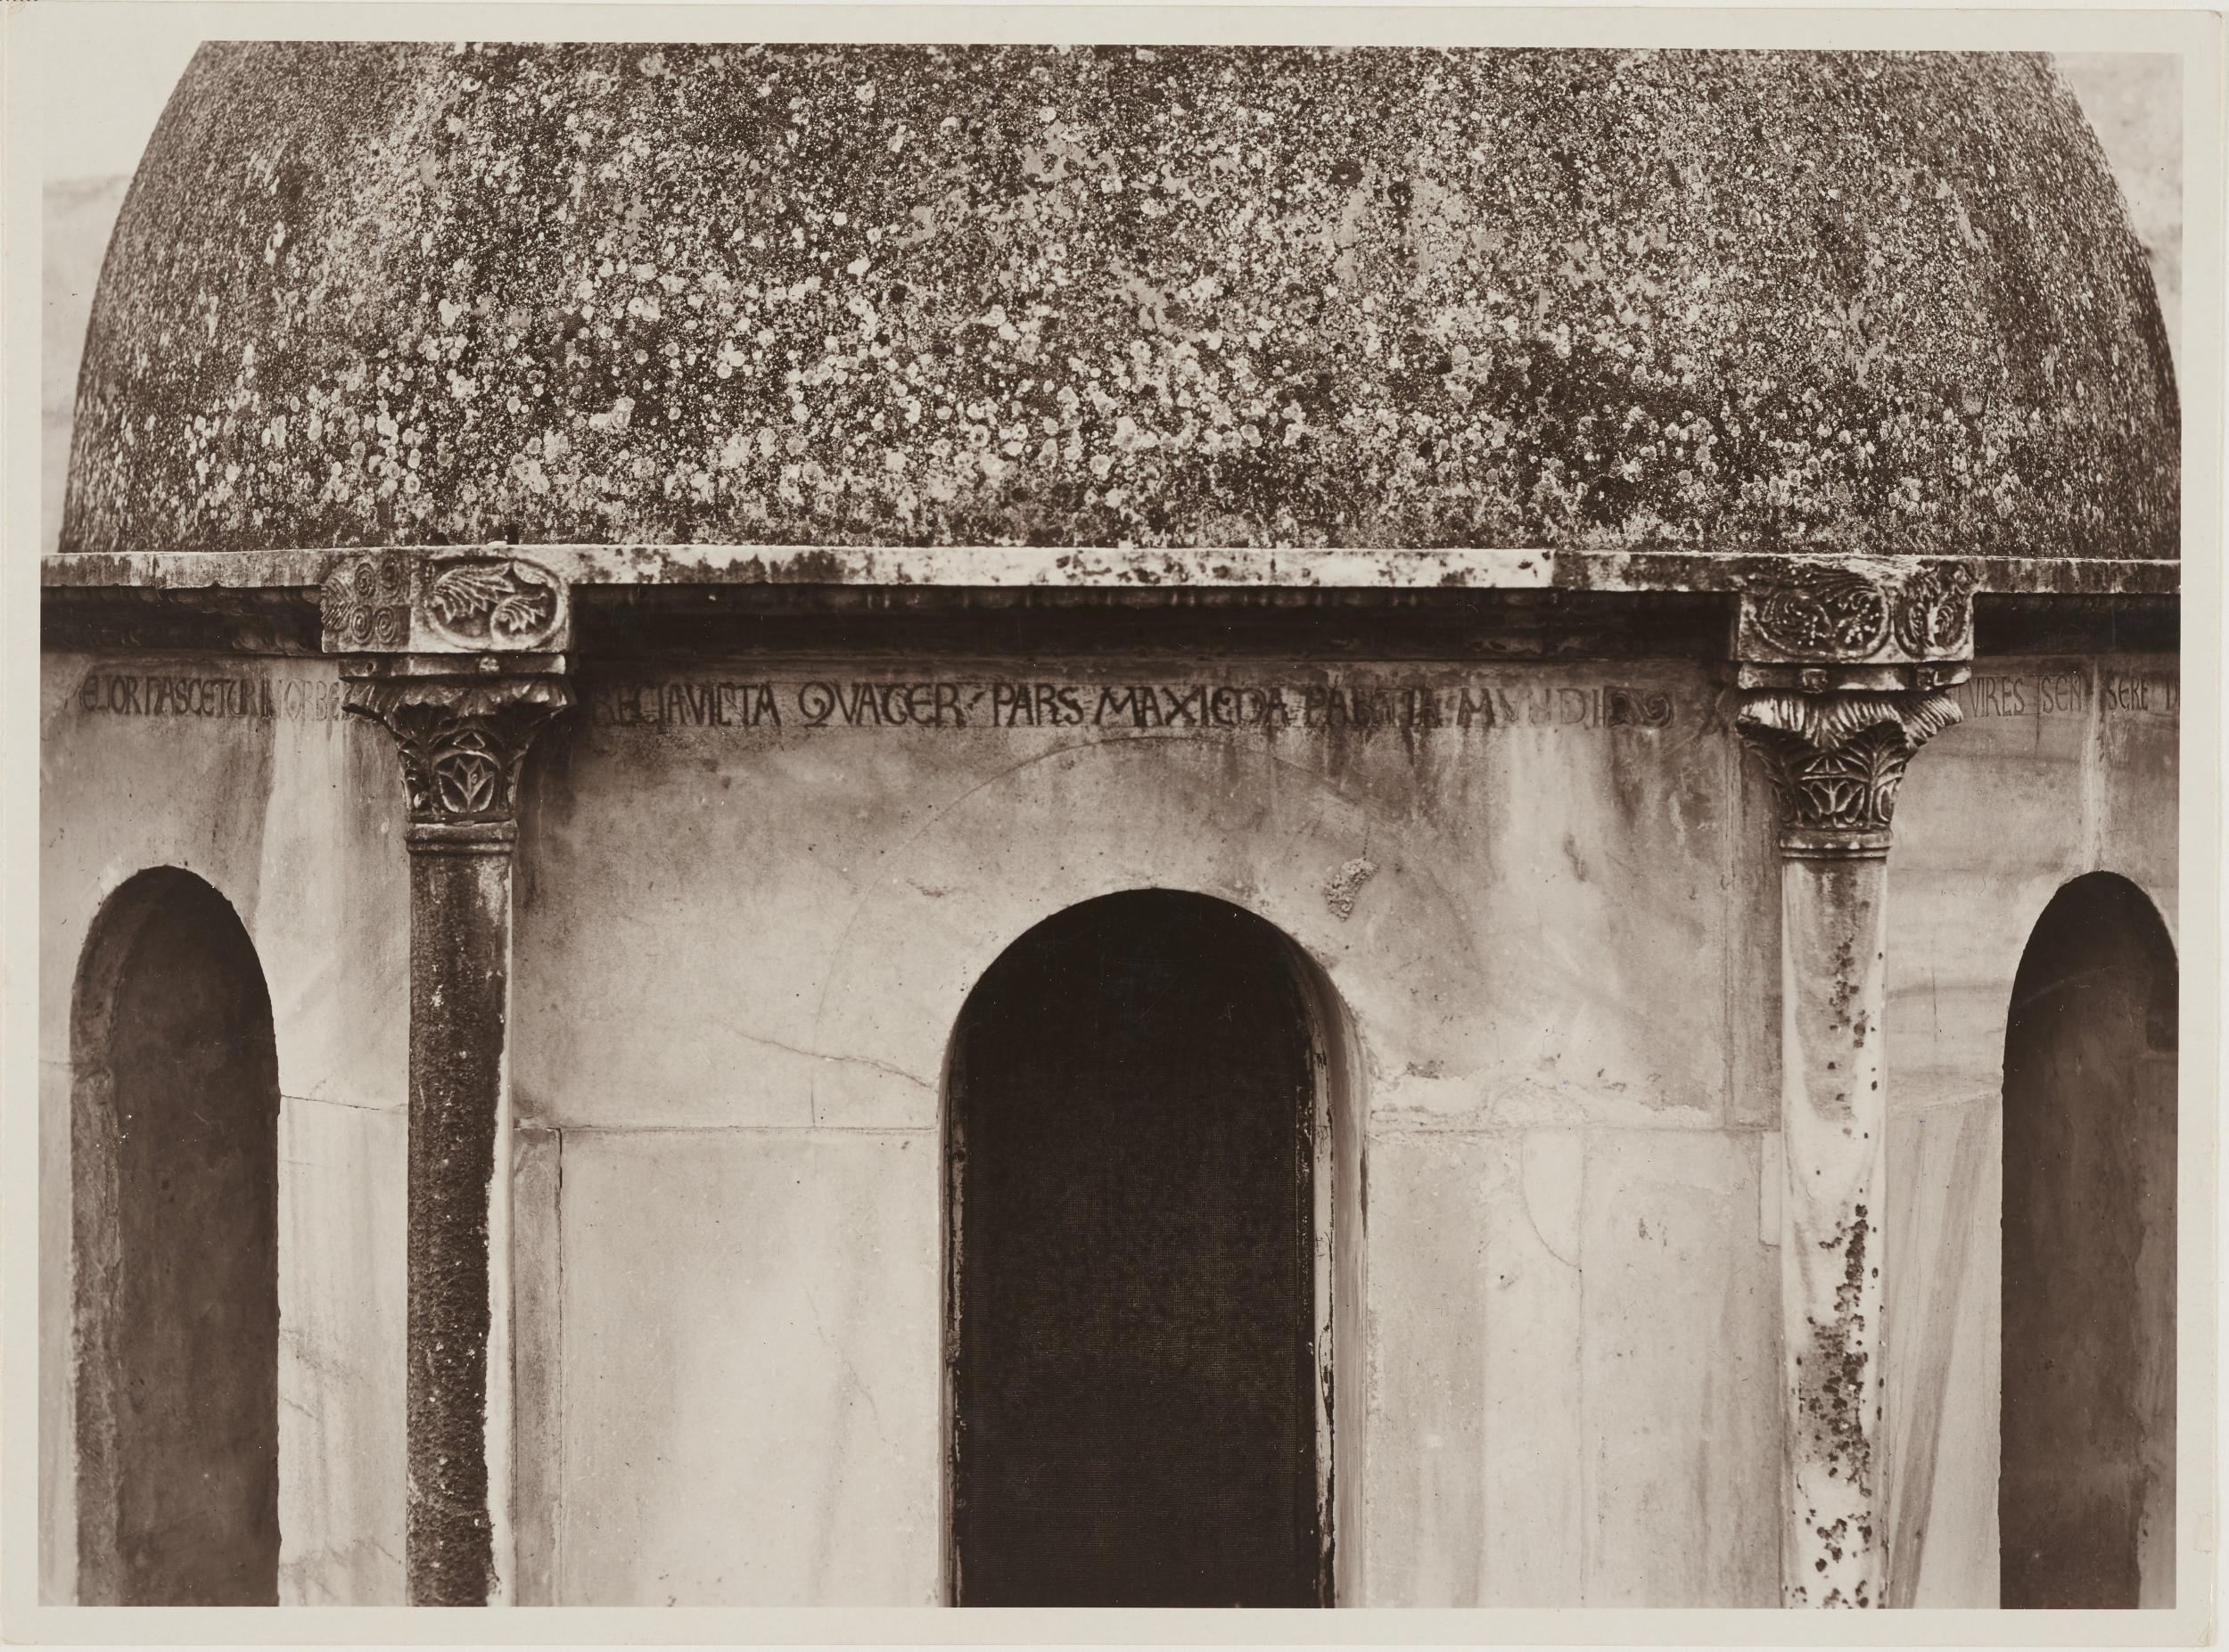 Antonio Ceccato, Canosa di Puglia - Cattedrale San Sabino, esterno, tomba di Boemondo, particolare dopo il restauro, 1926-1950, gelatina ai sali d'argento/carta, 16,3x22 cm, MPI309695